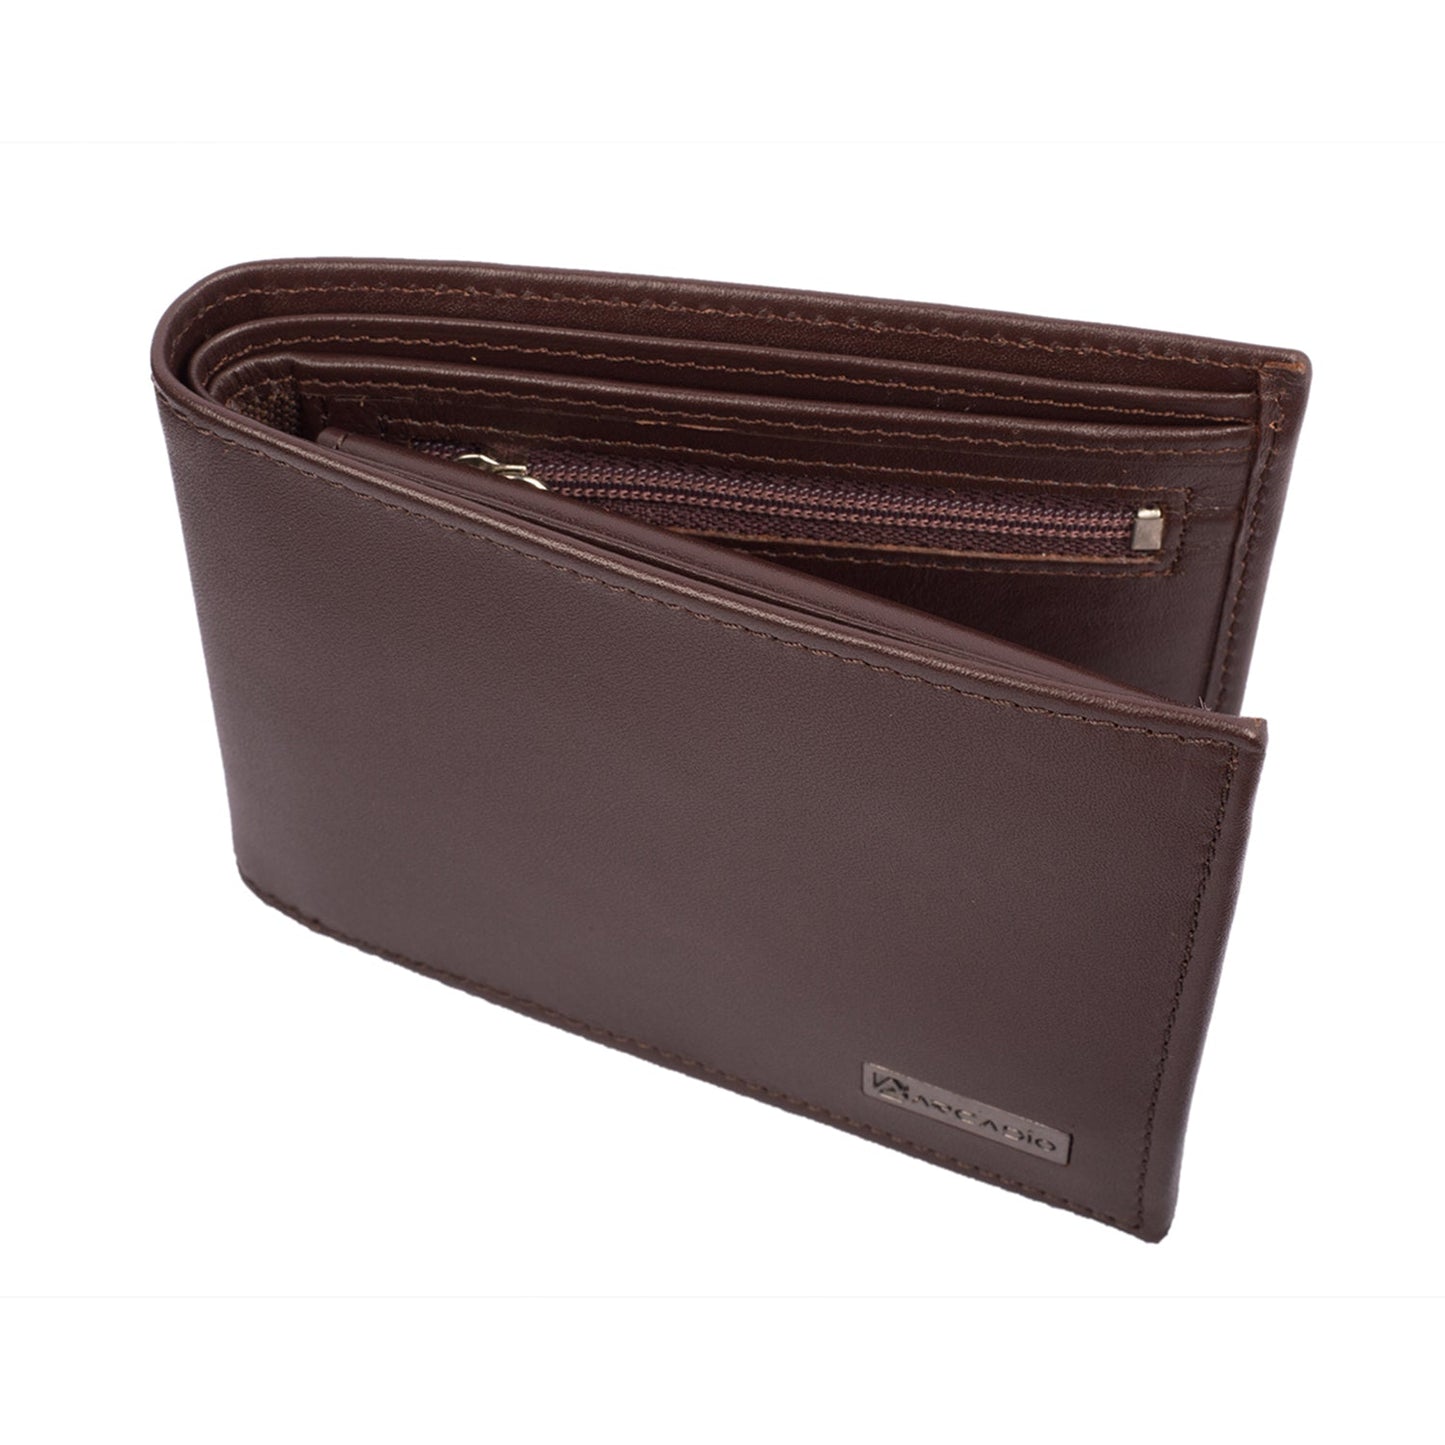 BROWNIE Leather Wallet ARW1002BR ARCADIO